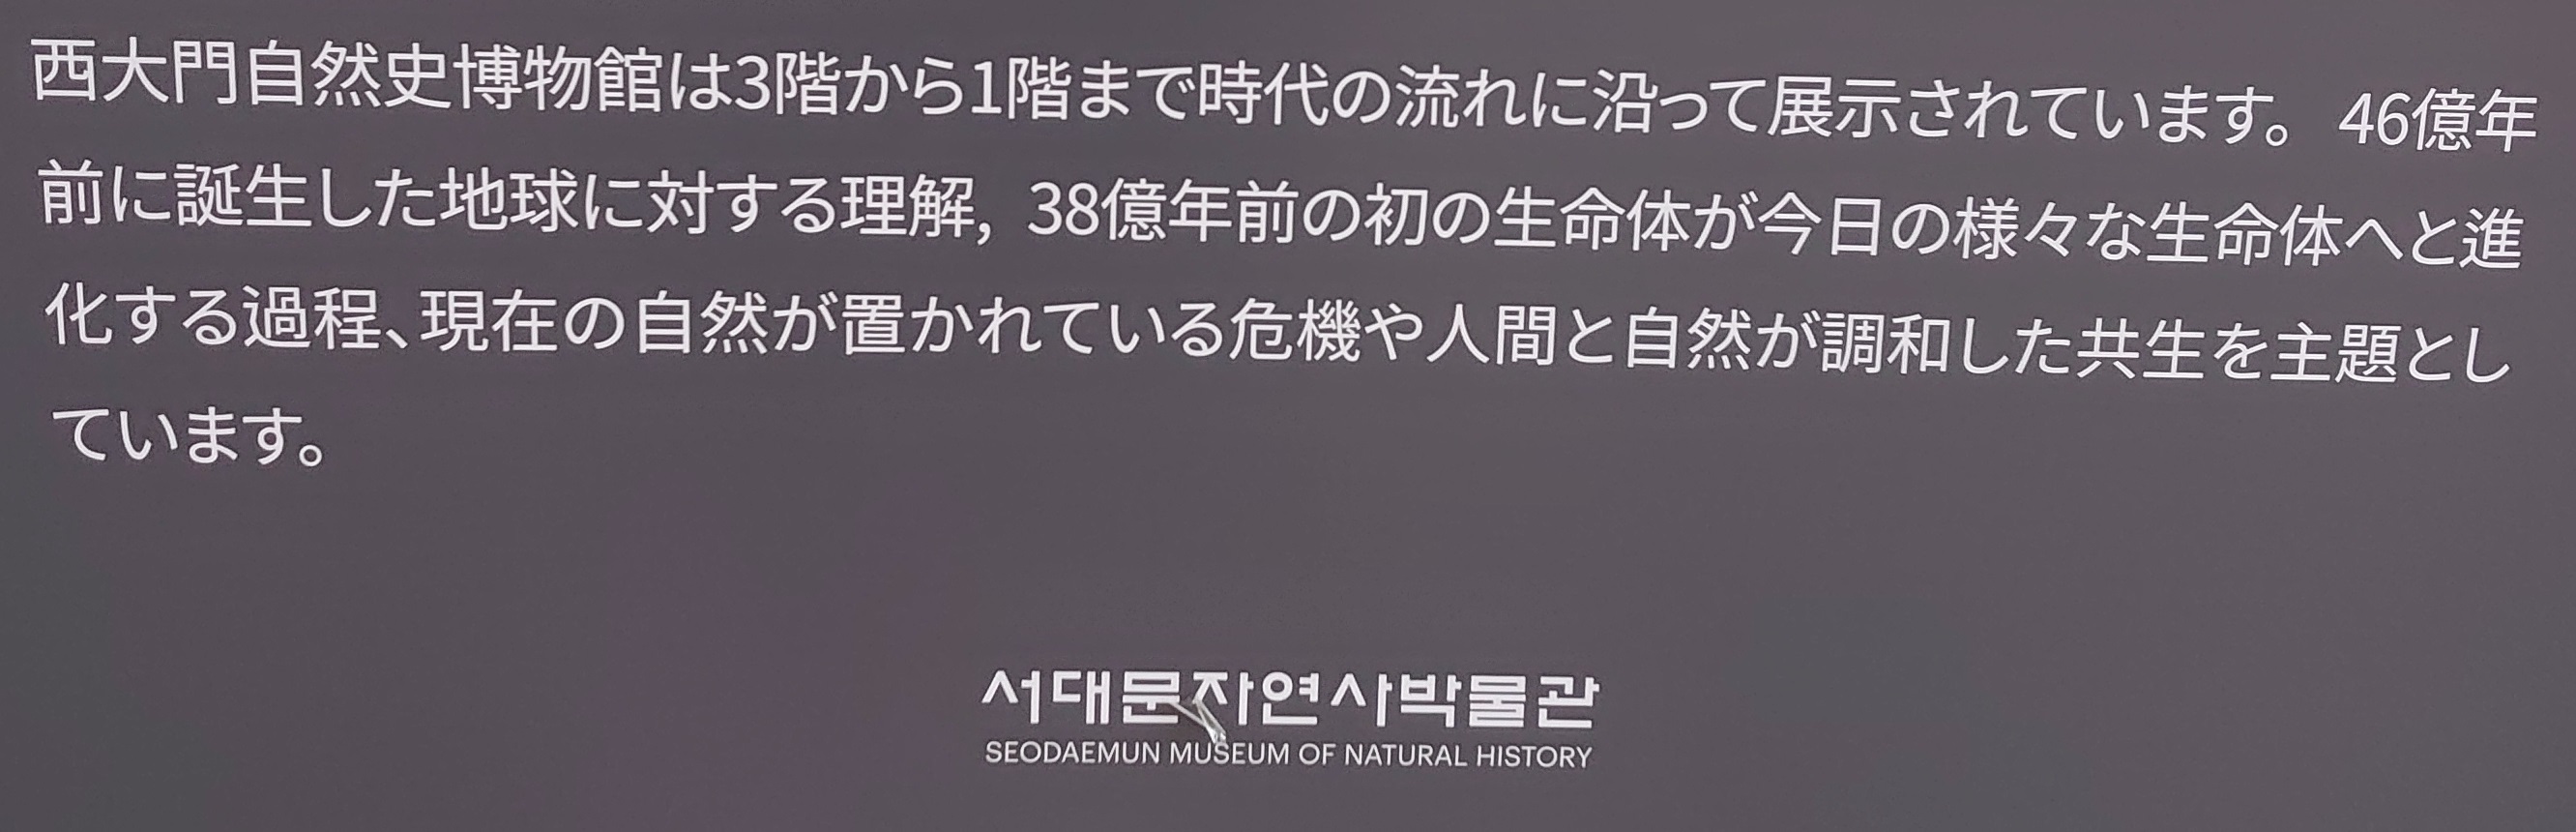 韓国,西大門自然史博物館 (26)